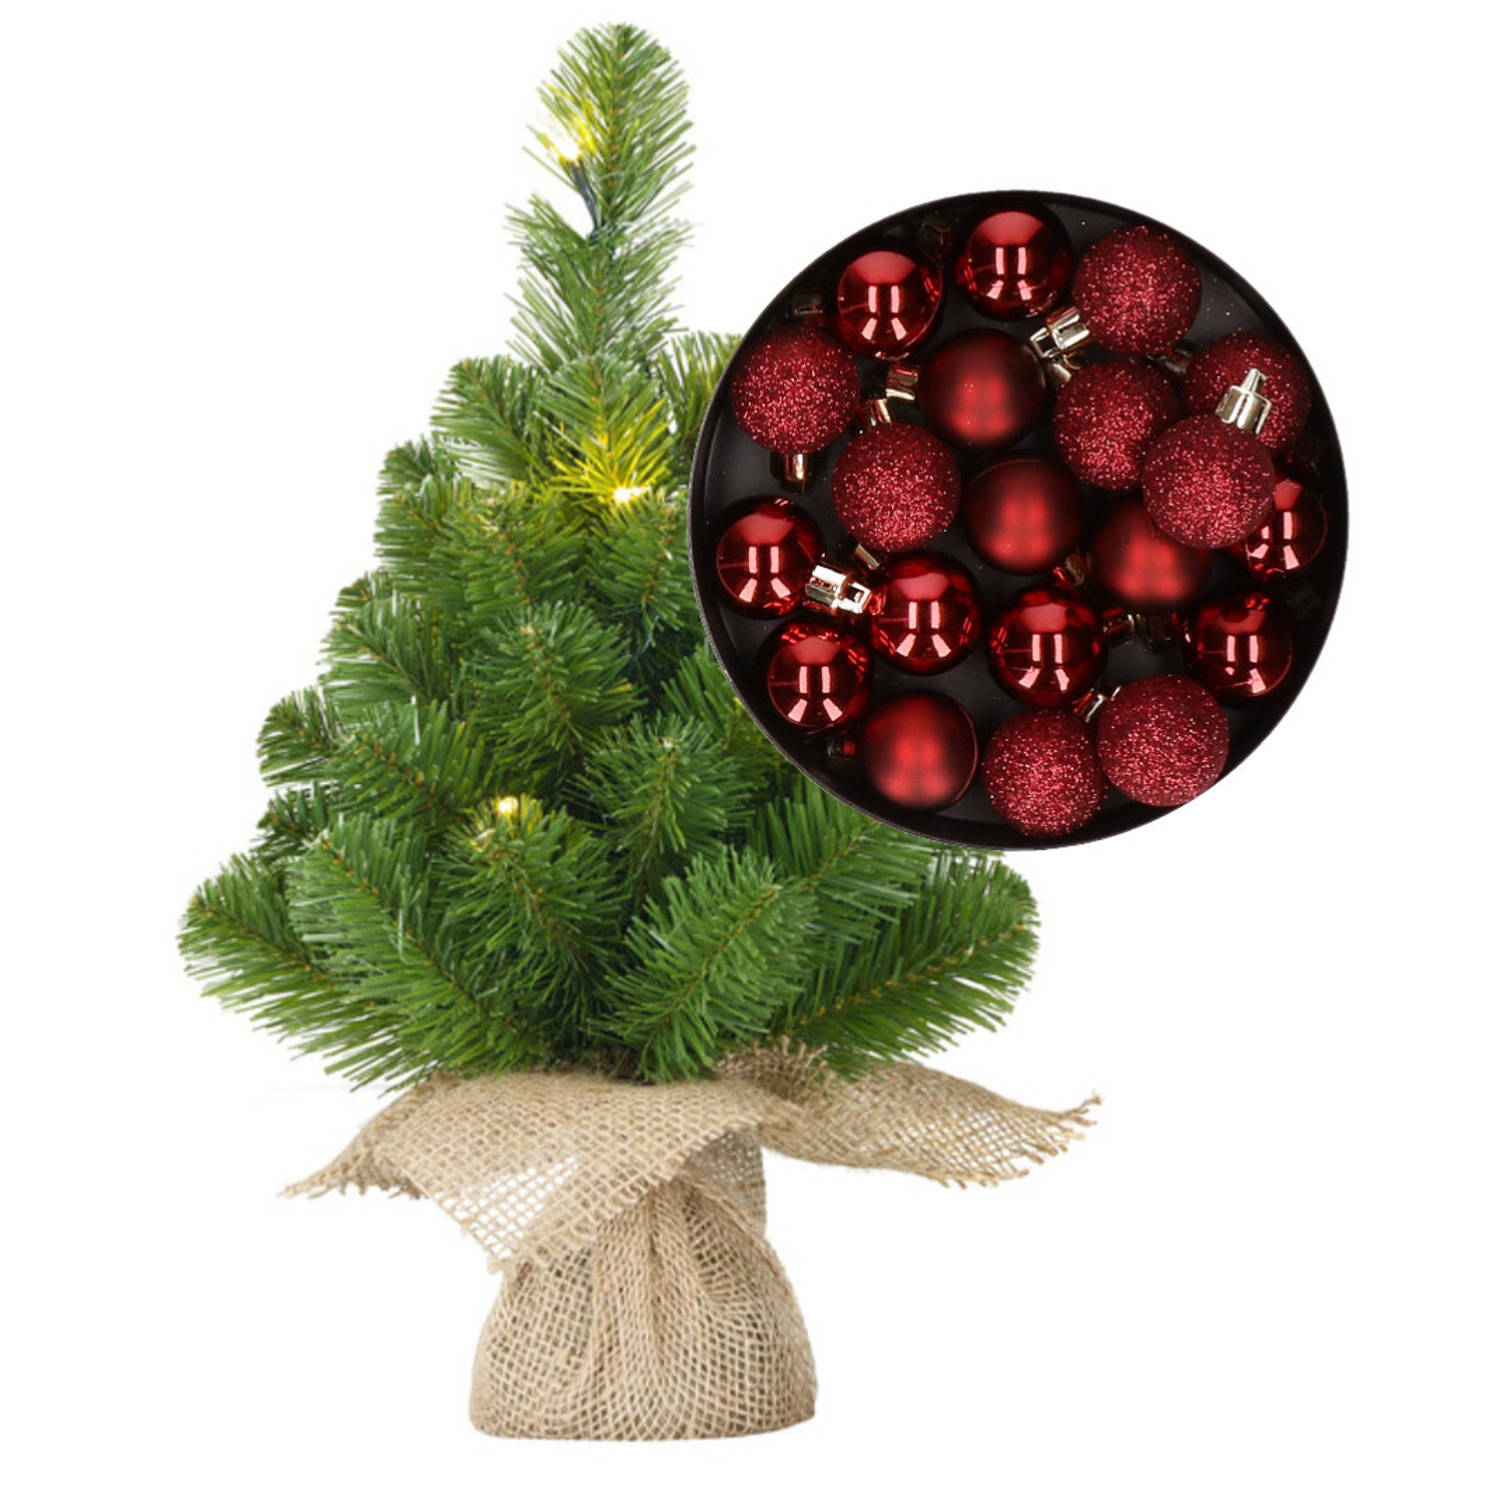 Mini kerstboom/kunstboom met verlichting 45 cm en inclusief kerstballen donkerrood - Kunstkerstboom